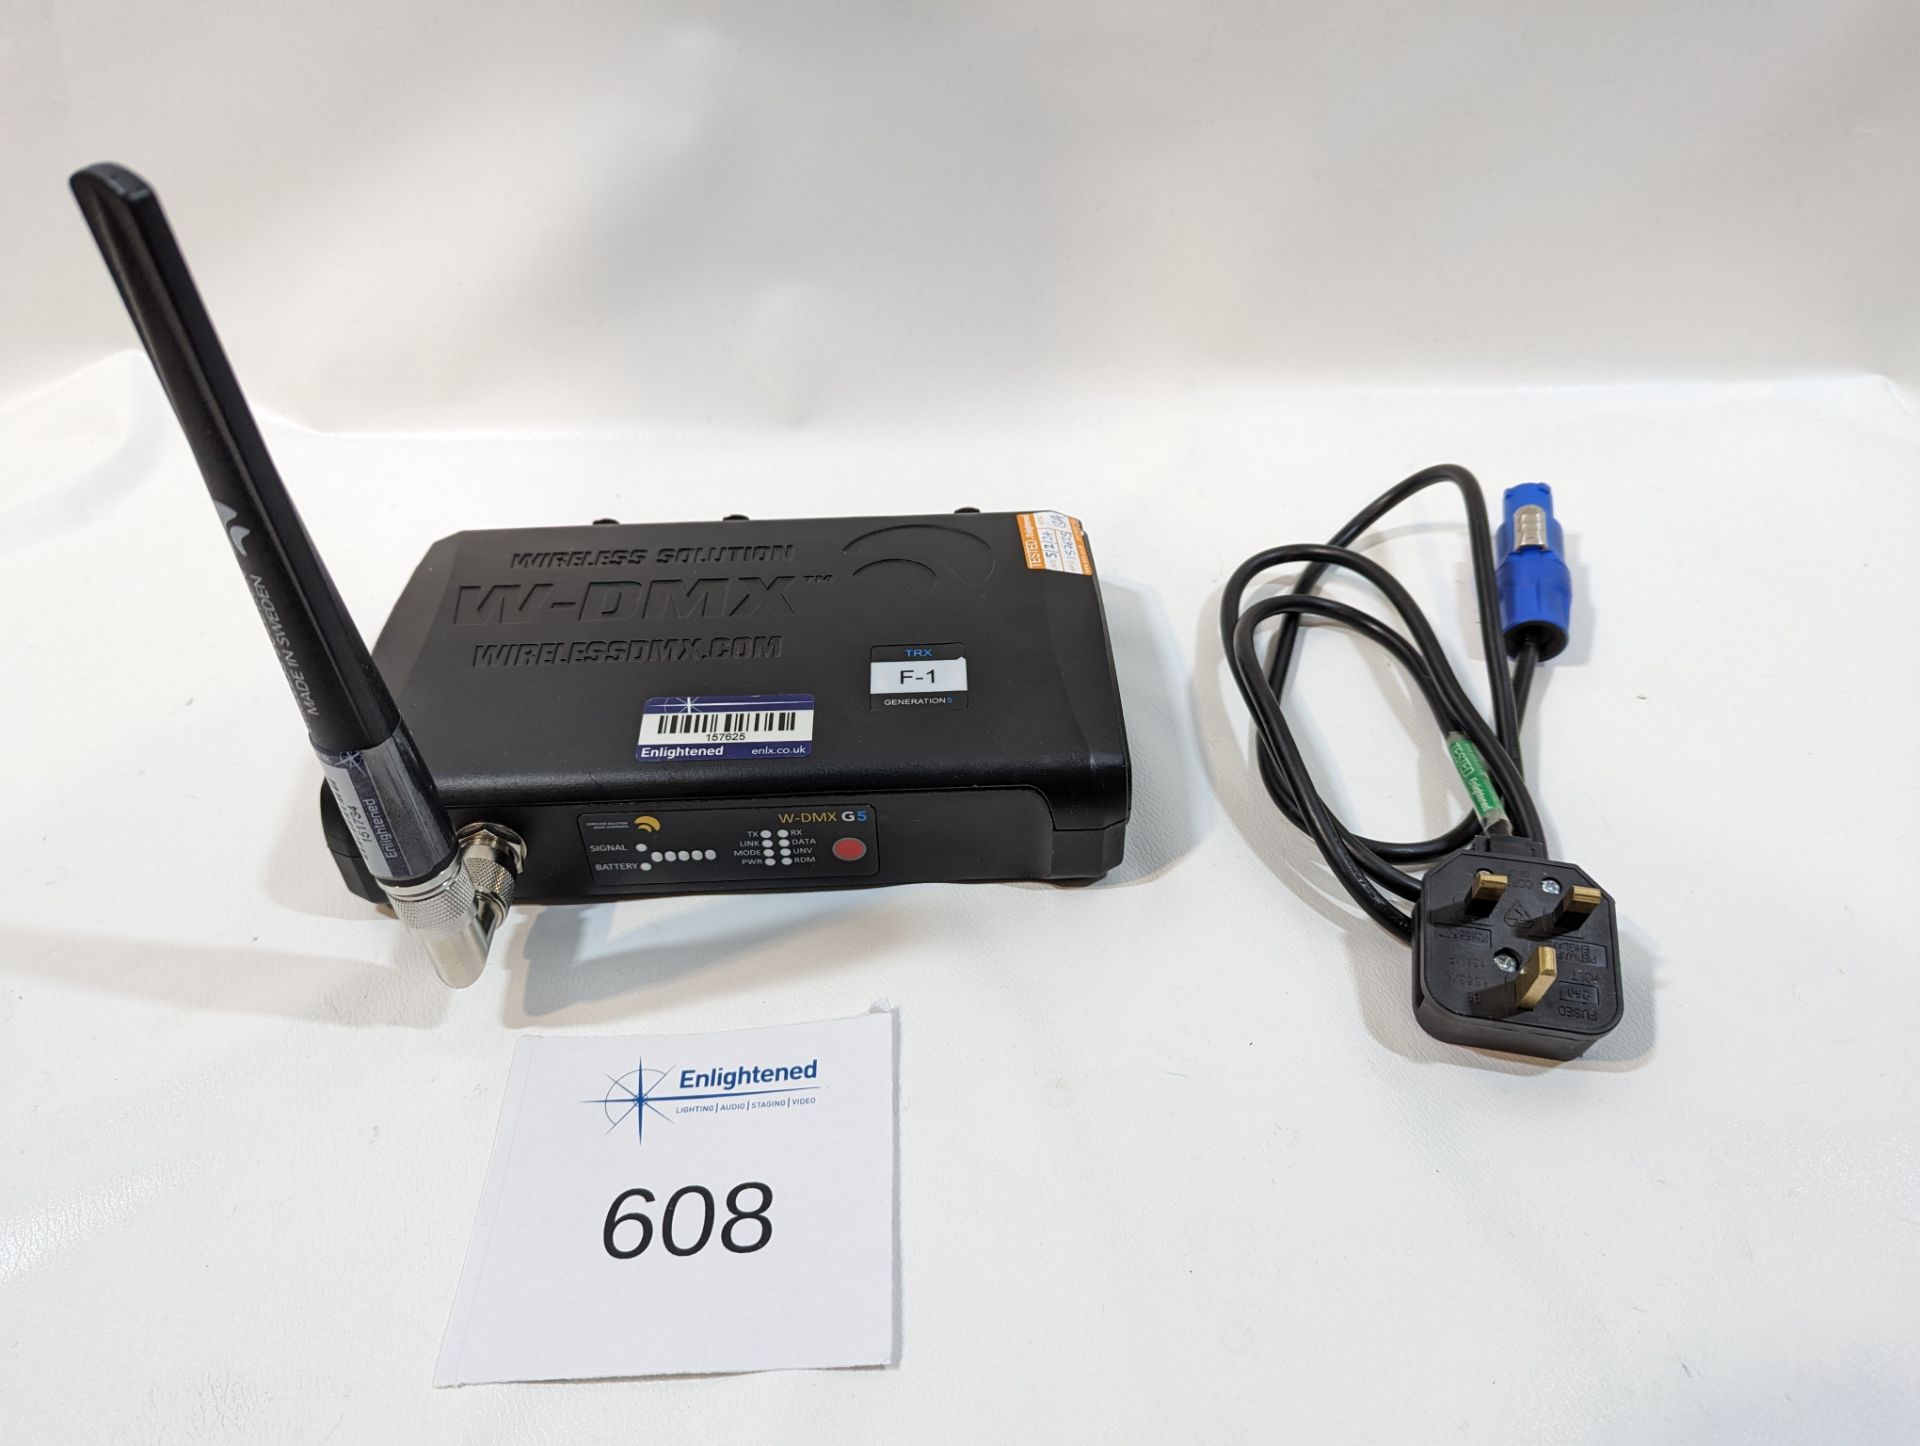 Wireless Solutions F-1 G5 WDMX TX/RX